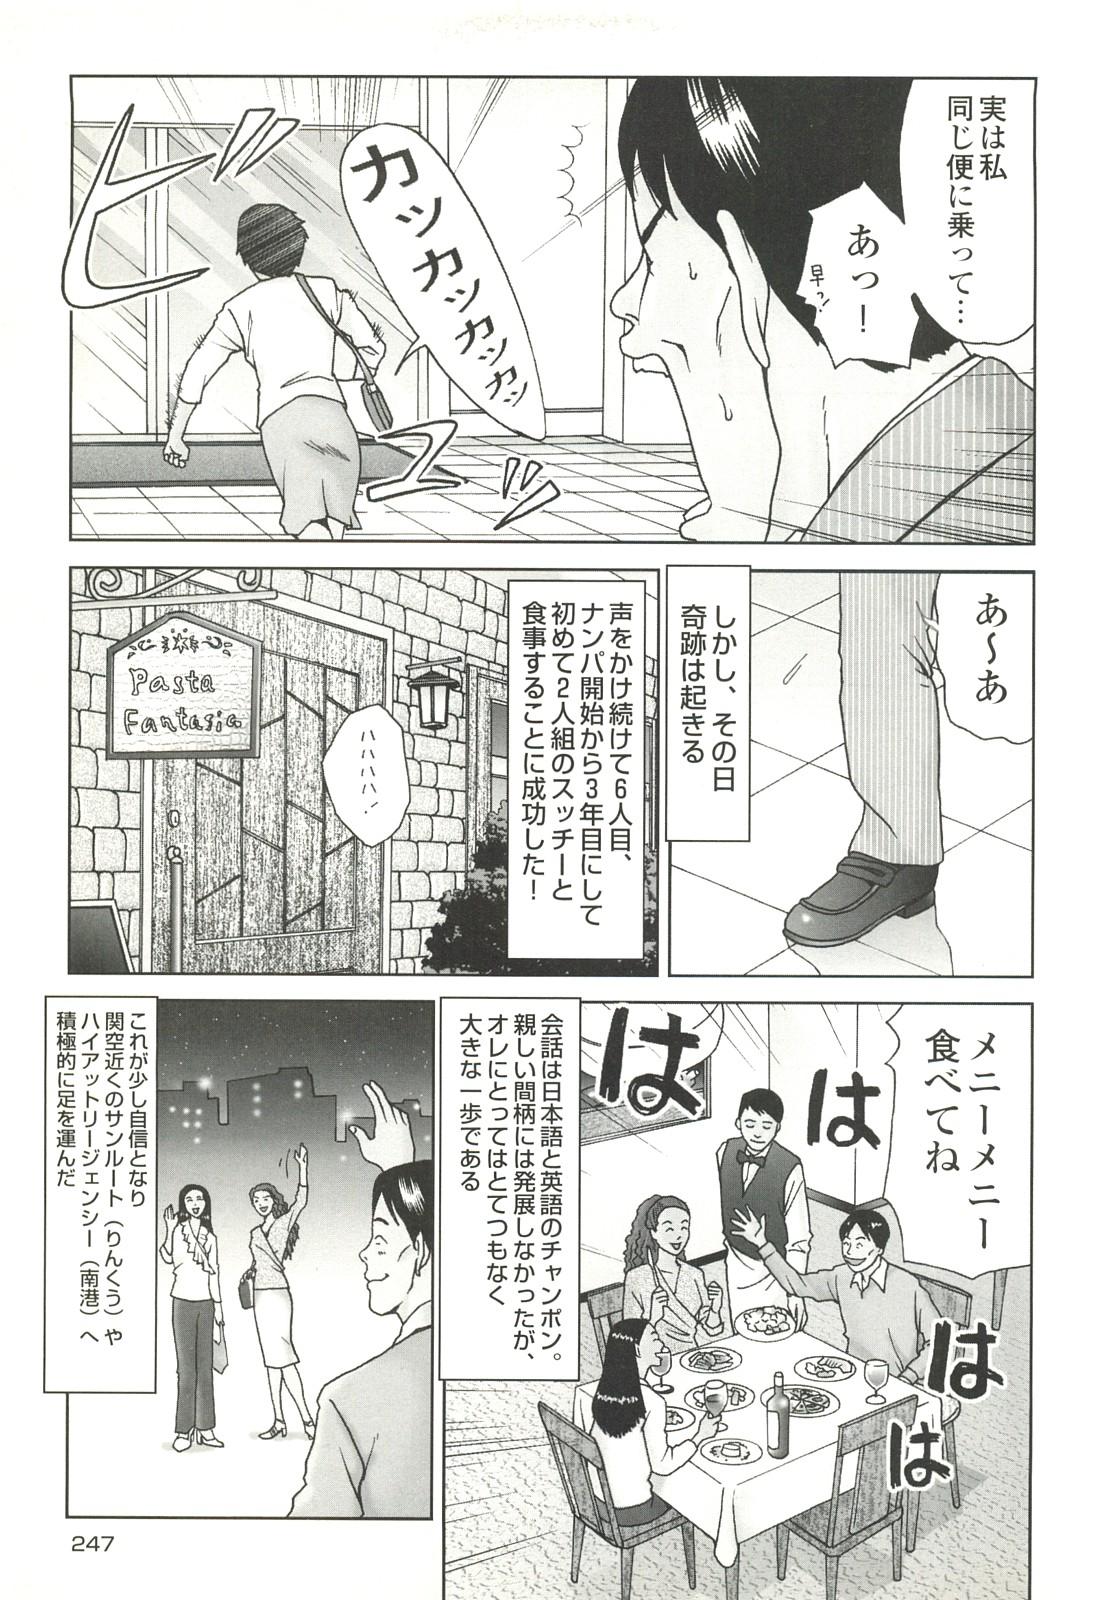 コミック裏モノJAPAN Vol.18 今井のりたつスペシャル号 246